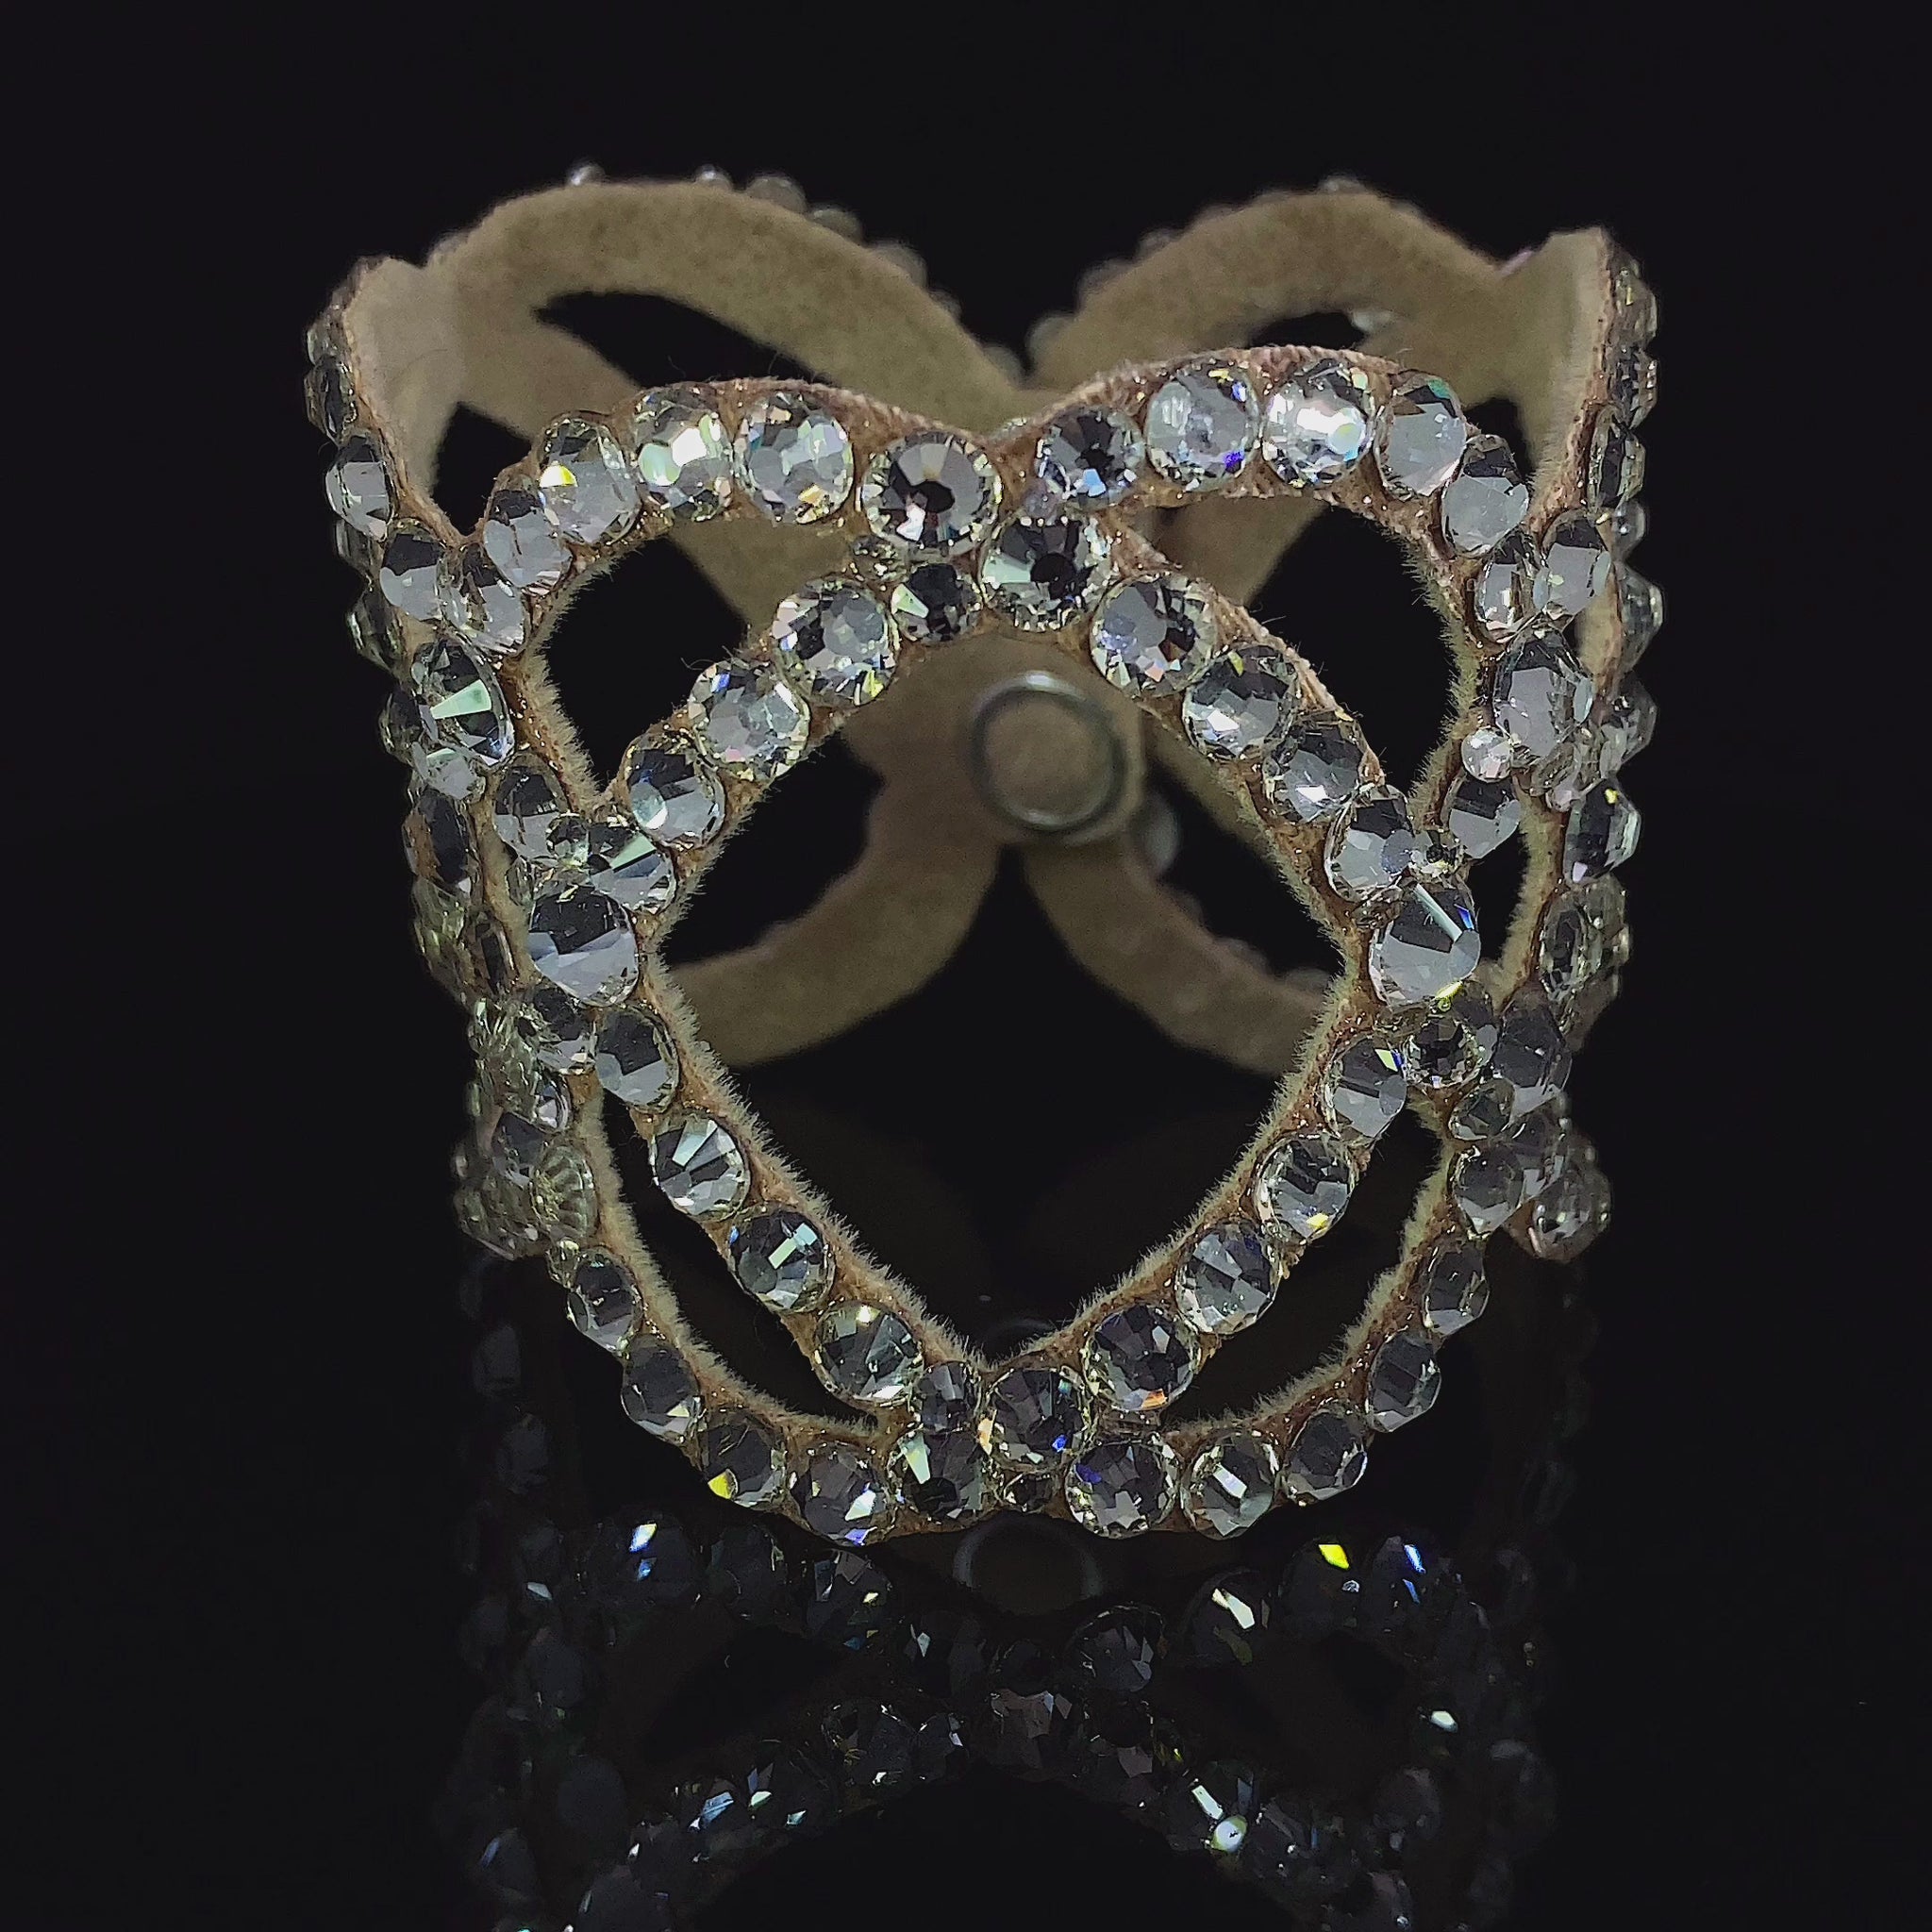 Video of women's bracelet jewelry